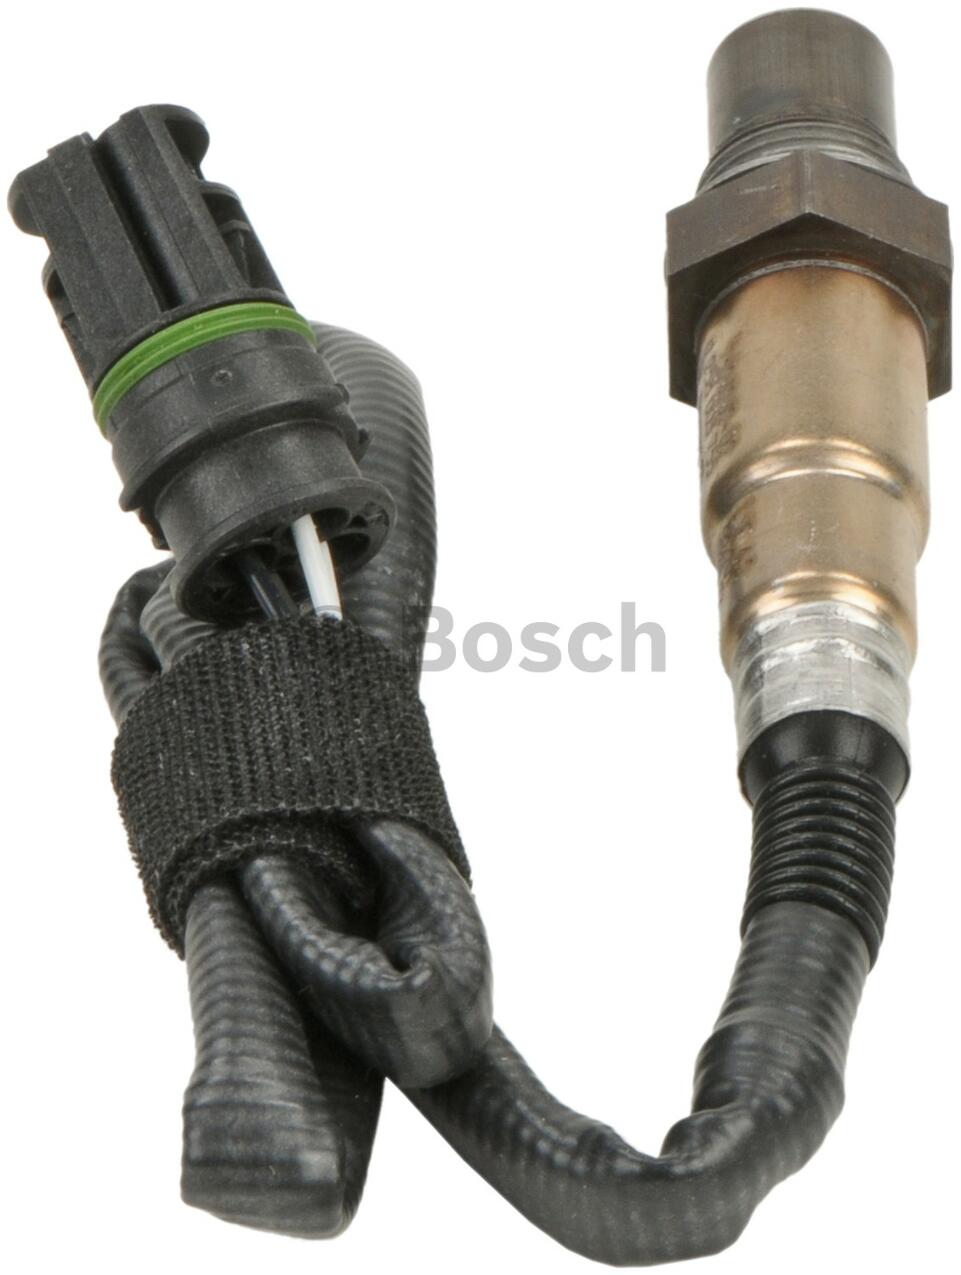 15167 Bosch O2 Oxygen Sensor DOWNSTREAM New for 550 650 750 Coupe BMW X5 Z4 550i